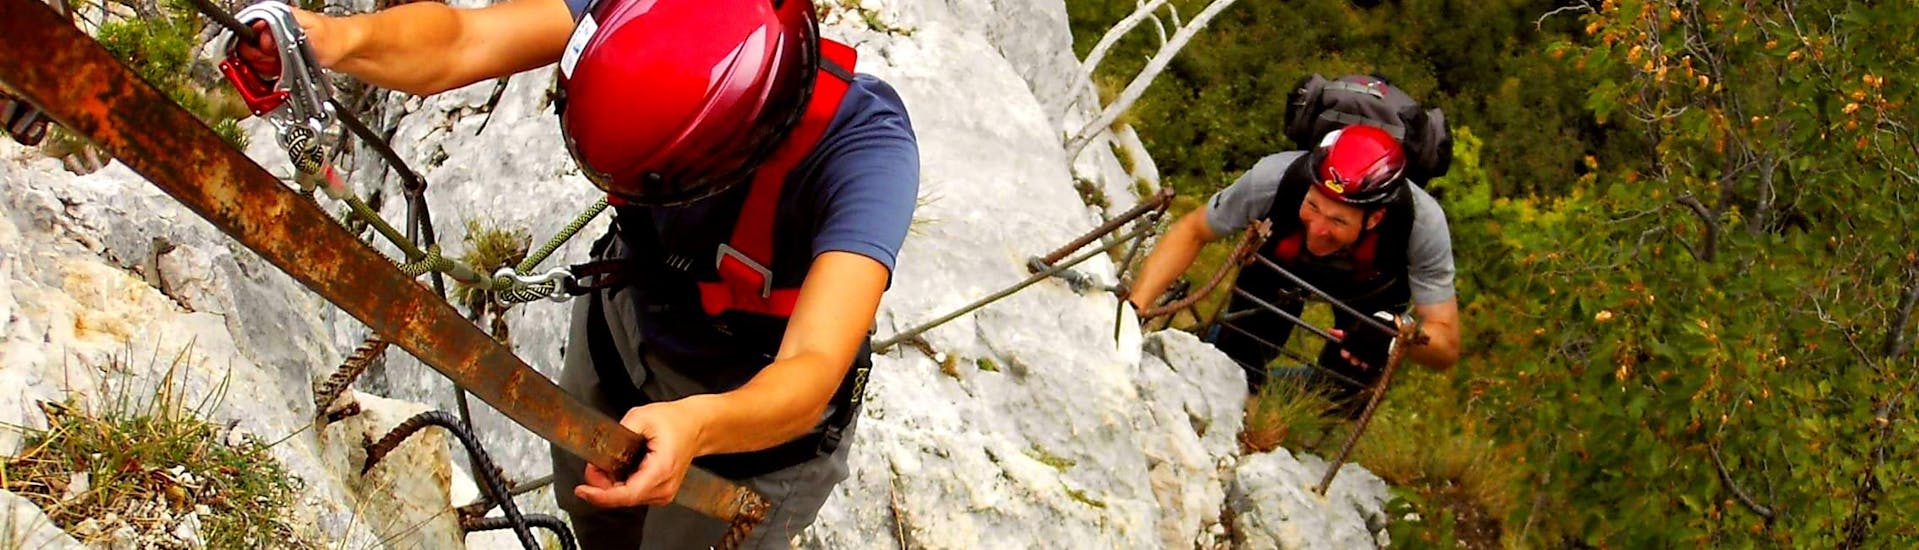 Zwei Teilnehmer am Klettersteig Via dell'Amicizia, der von Skyclimber organisiert wird, gehen in Richtung des Fotografen.